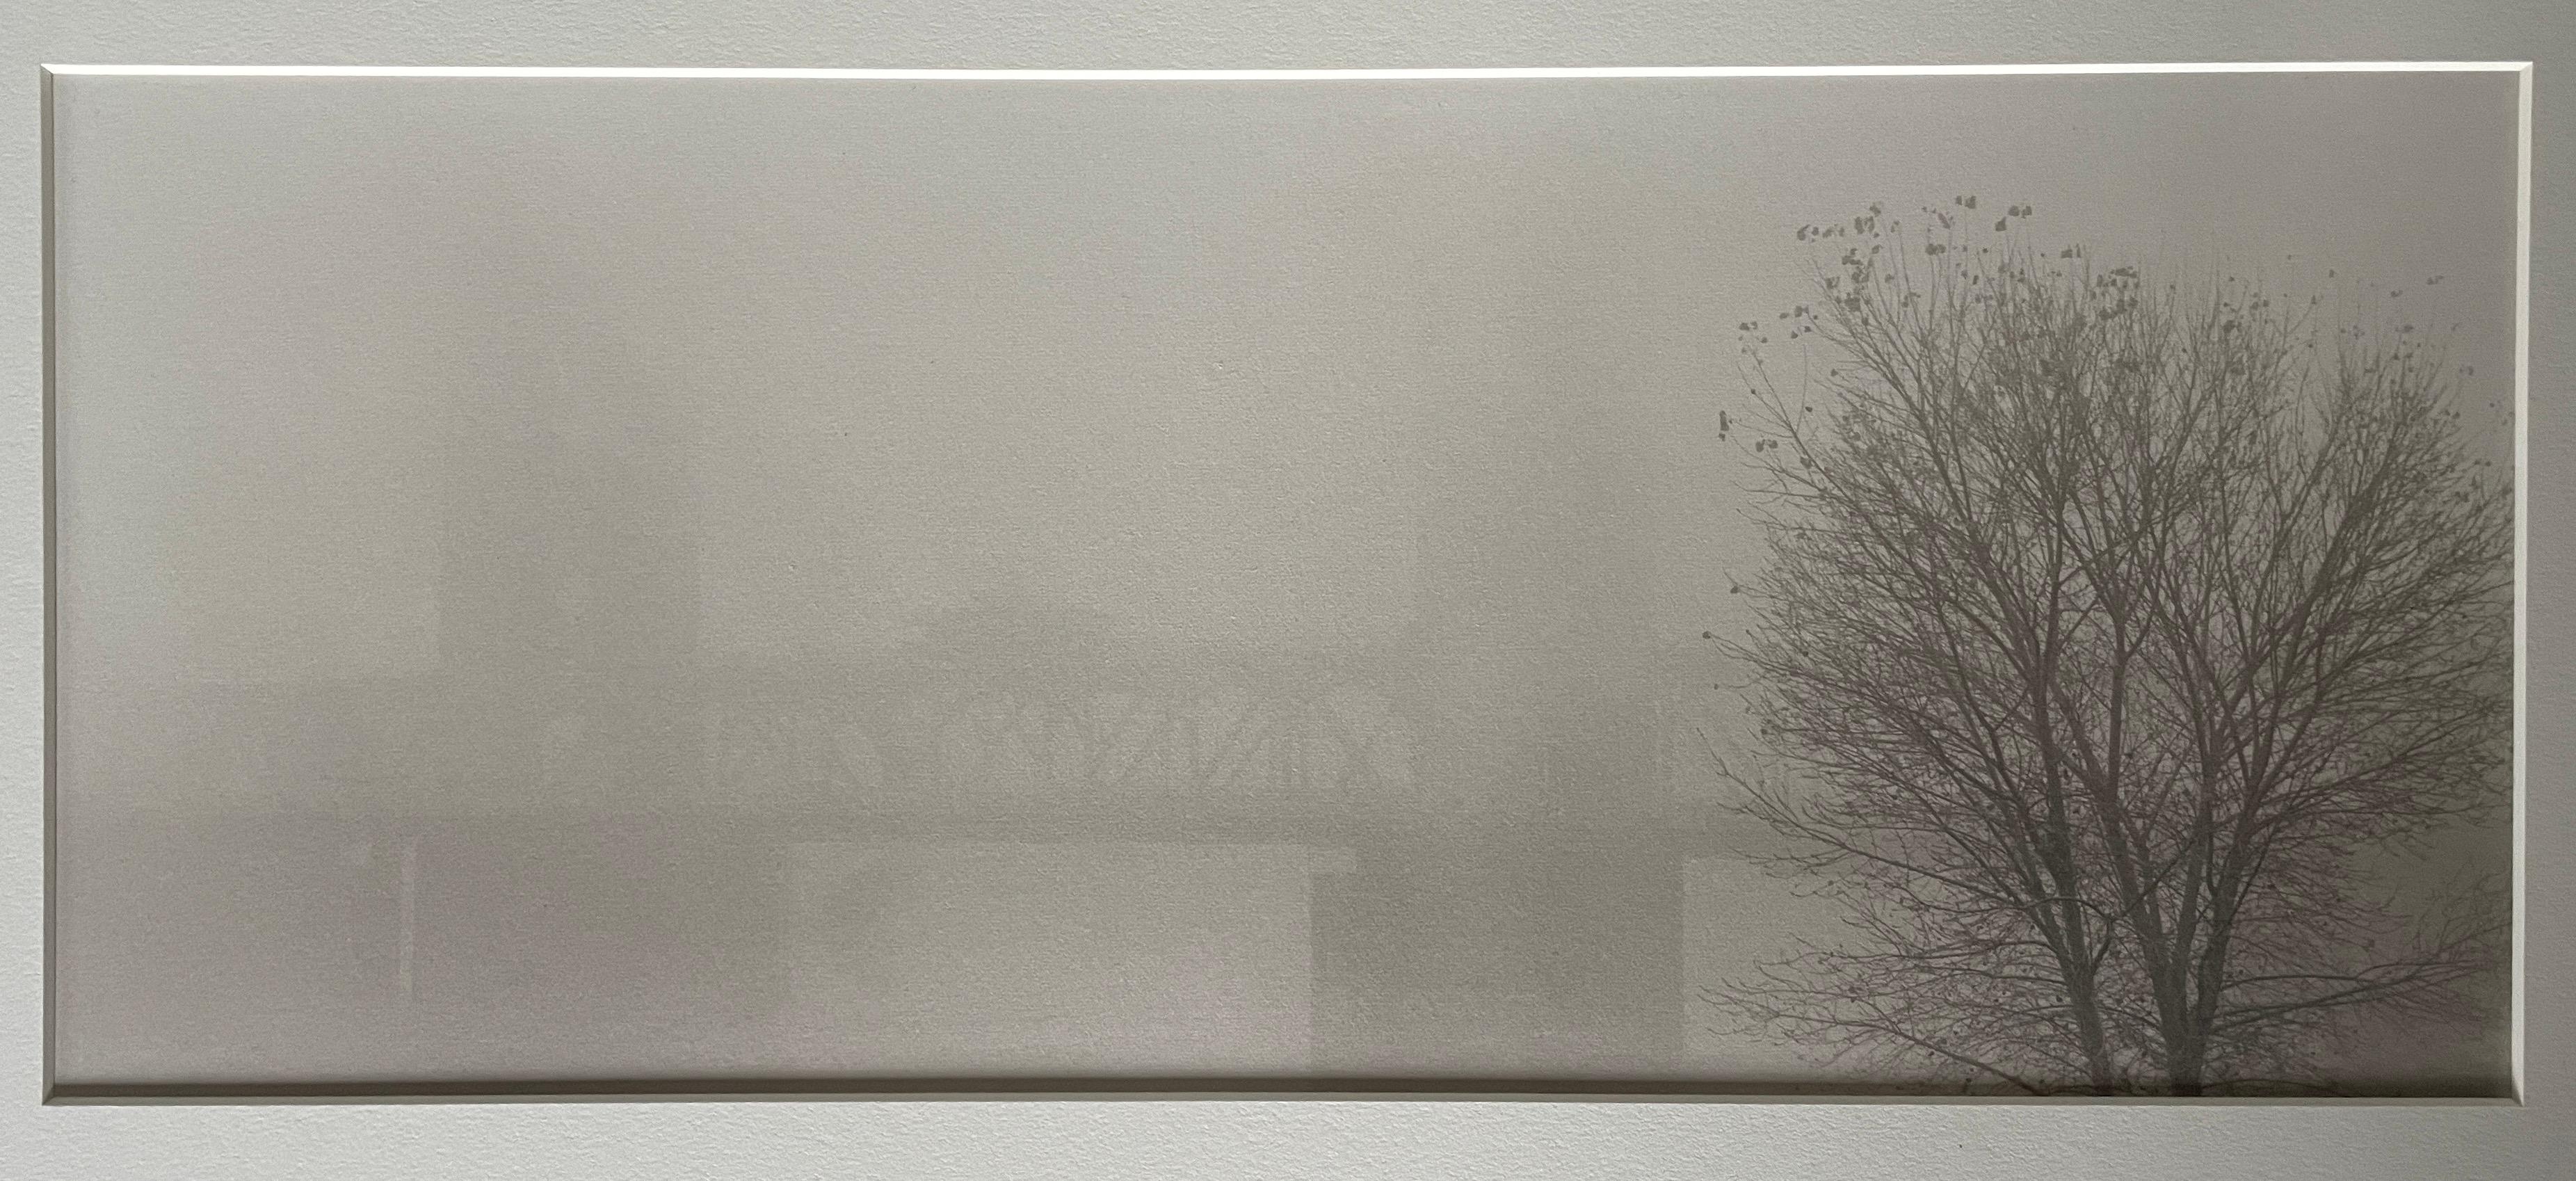 Kerik Kouklis Black and White Photograph - Tower Bridge In Fog, Sacramento California